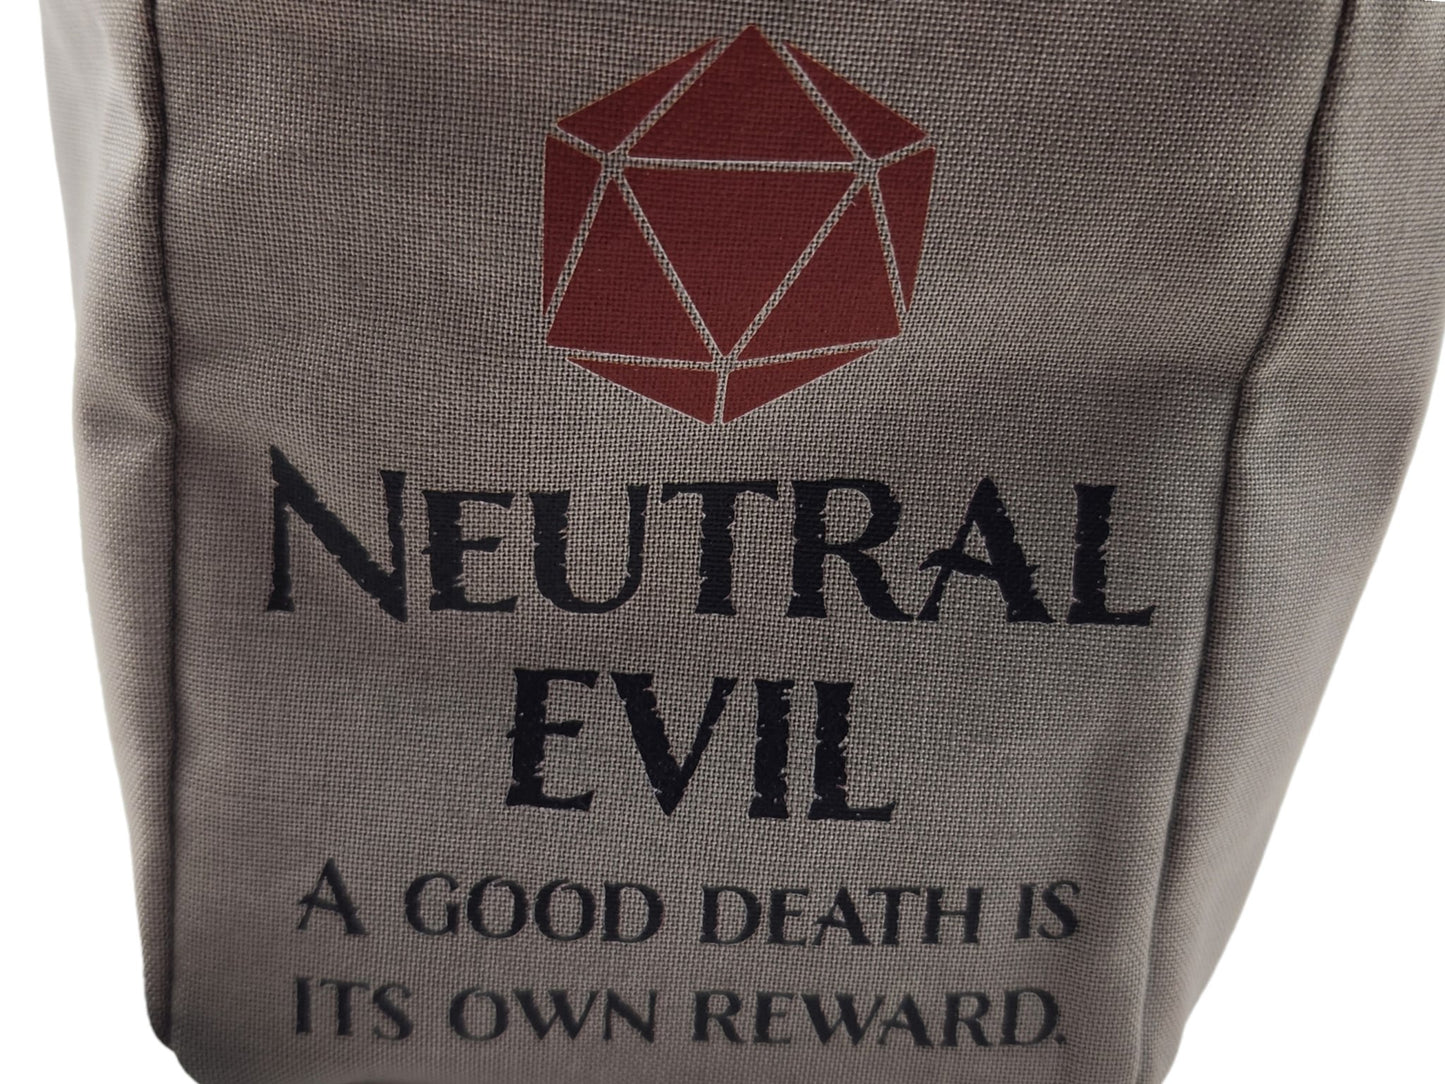 "Neutral Evil" Dice Bag - Rowan Gate